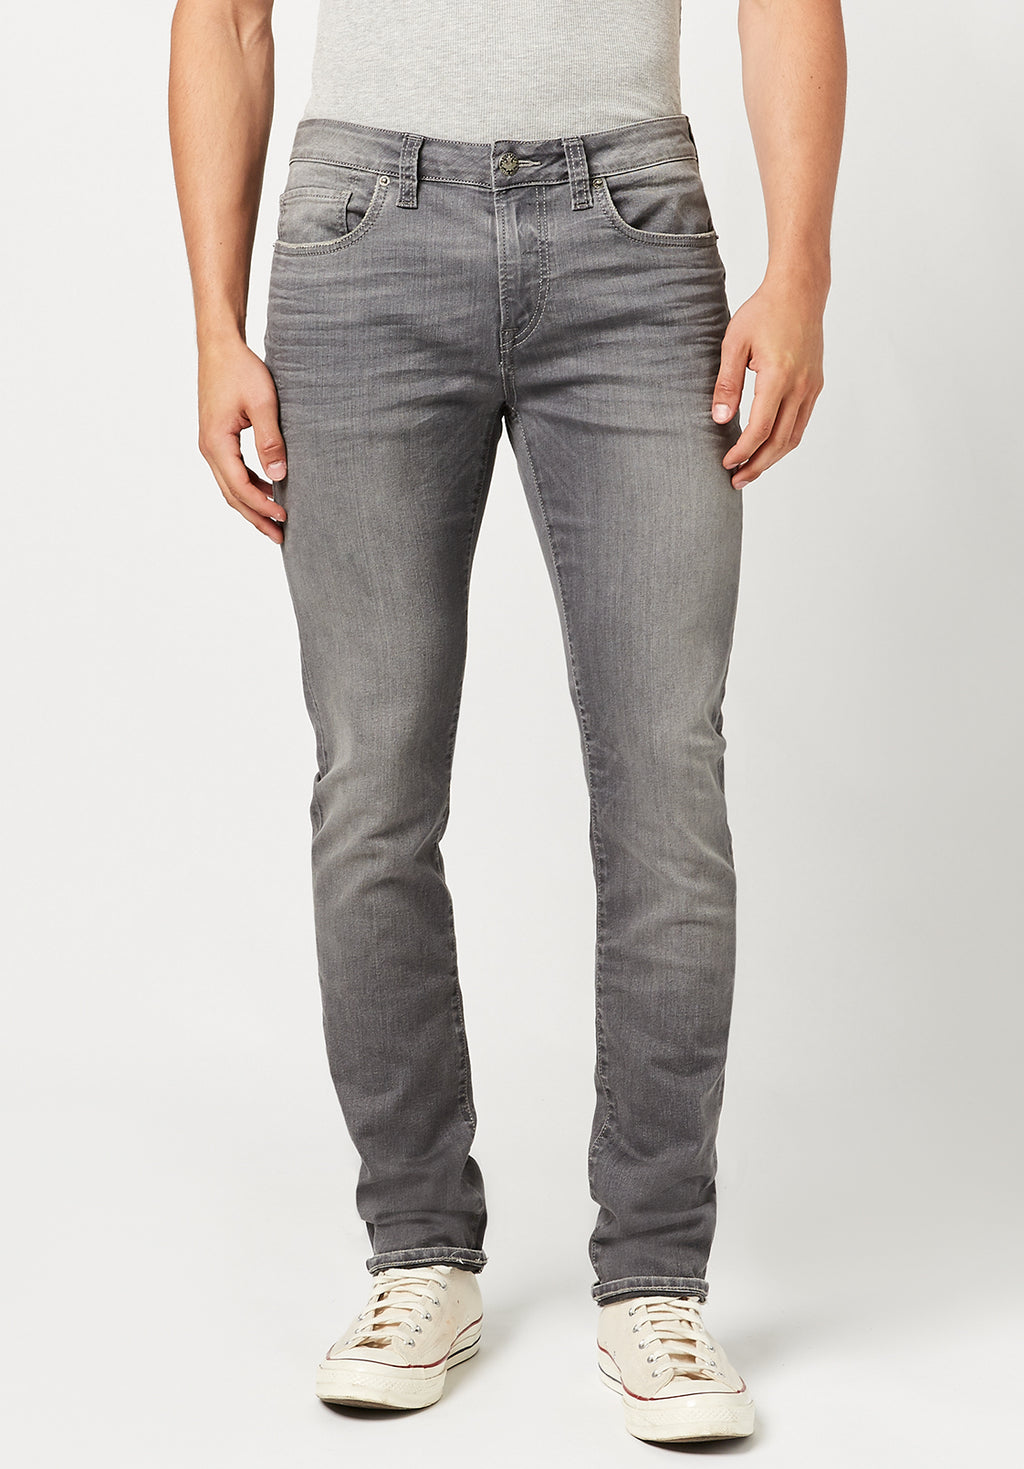 Bare Denim Men Grey Jeans - Selling Fast at Pantaloons.com